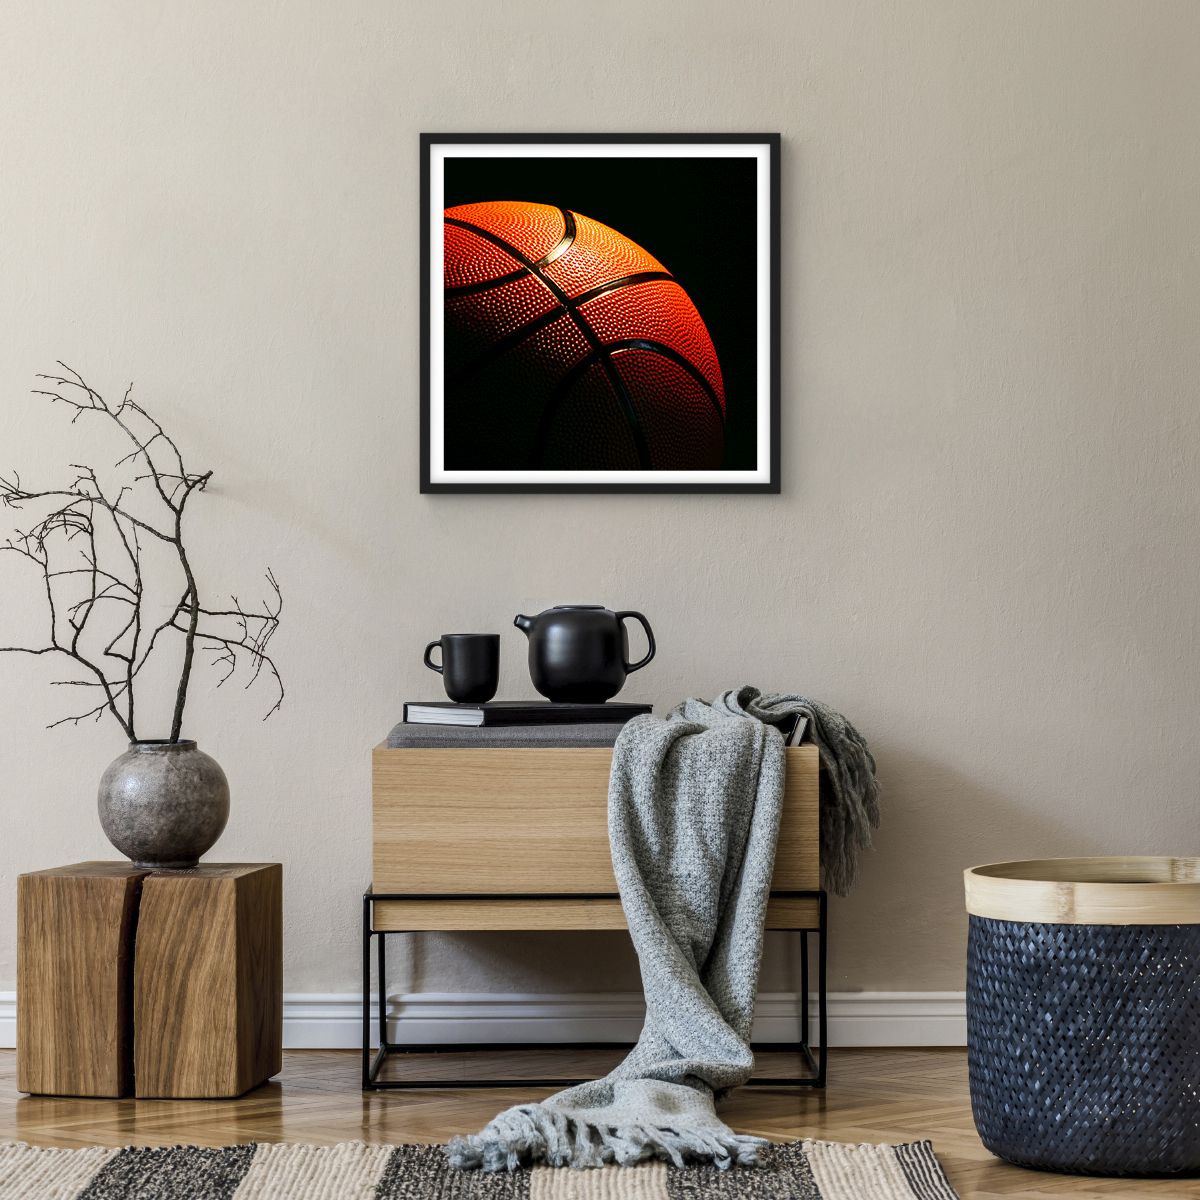 Affiche dans un cadre noir Sport, Affiche dans un cadre noir Basket, Affiche dans un cadre noir Basket, Affiche dans un cadre noir Loisir, Affiche dans un cadre noir Rivalité